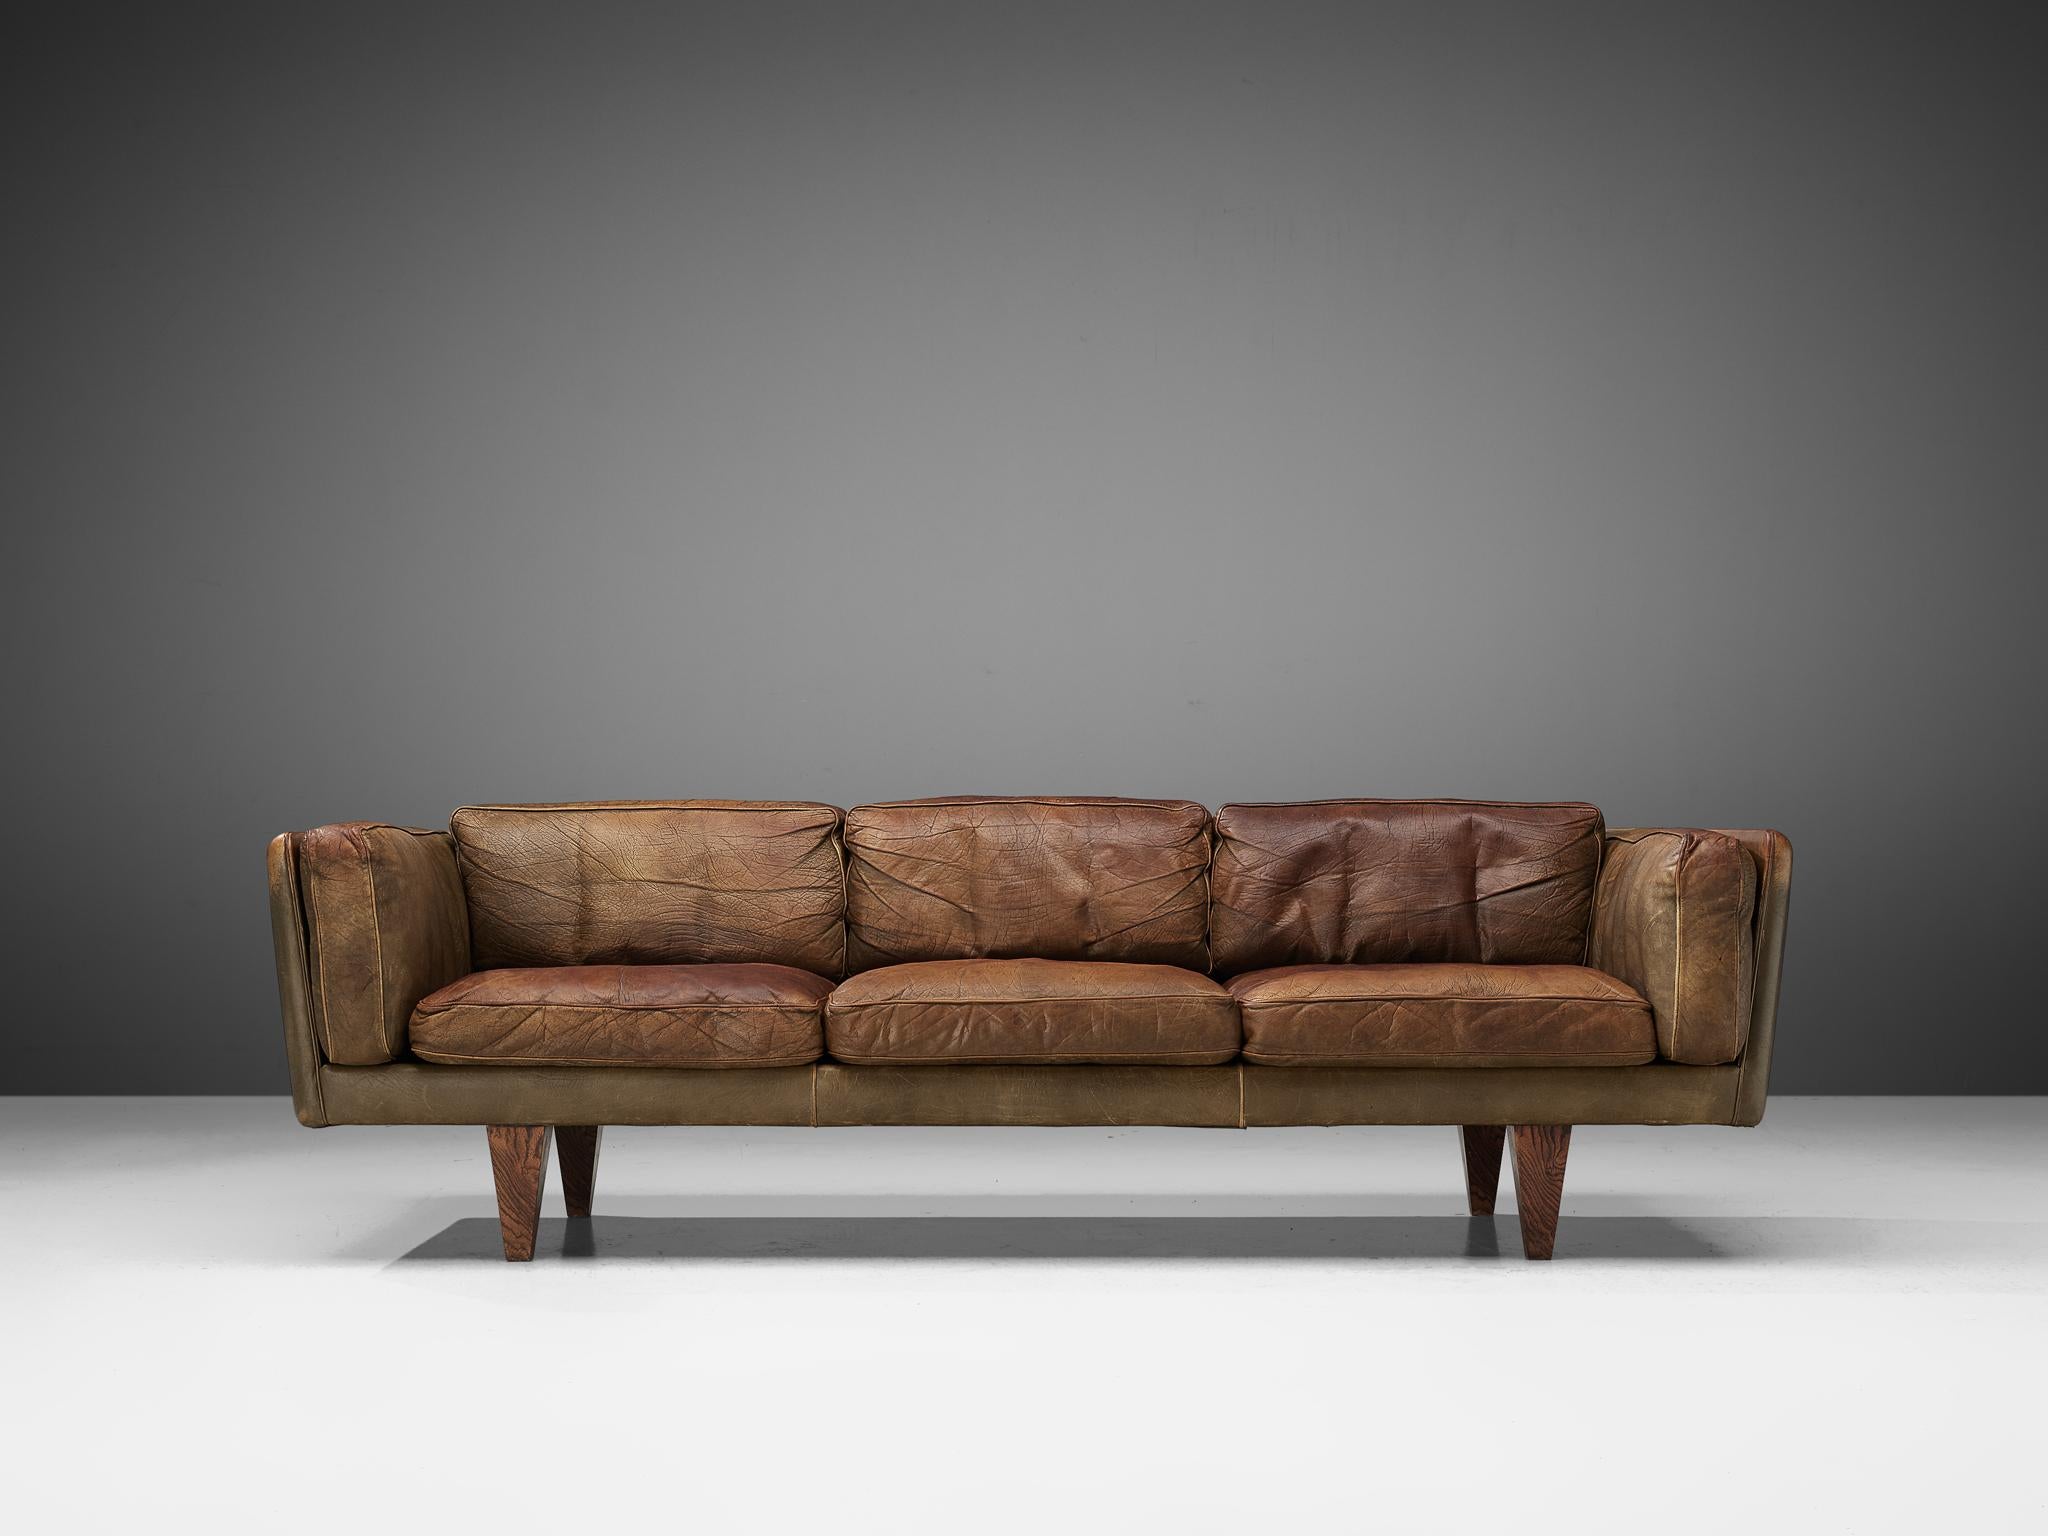 Illum Wikkelsø for Holger Christiansen, sofa model 'V11', leather, rosewood, Denmark 1960s.

Illum Wikkelsø's three-seater sofa 'V11